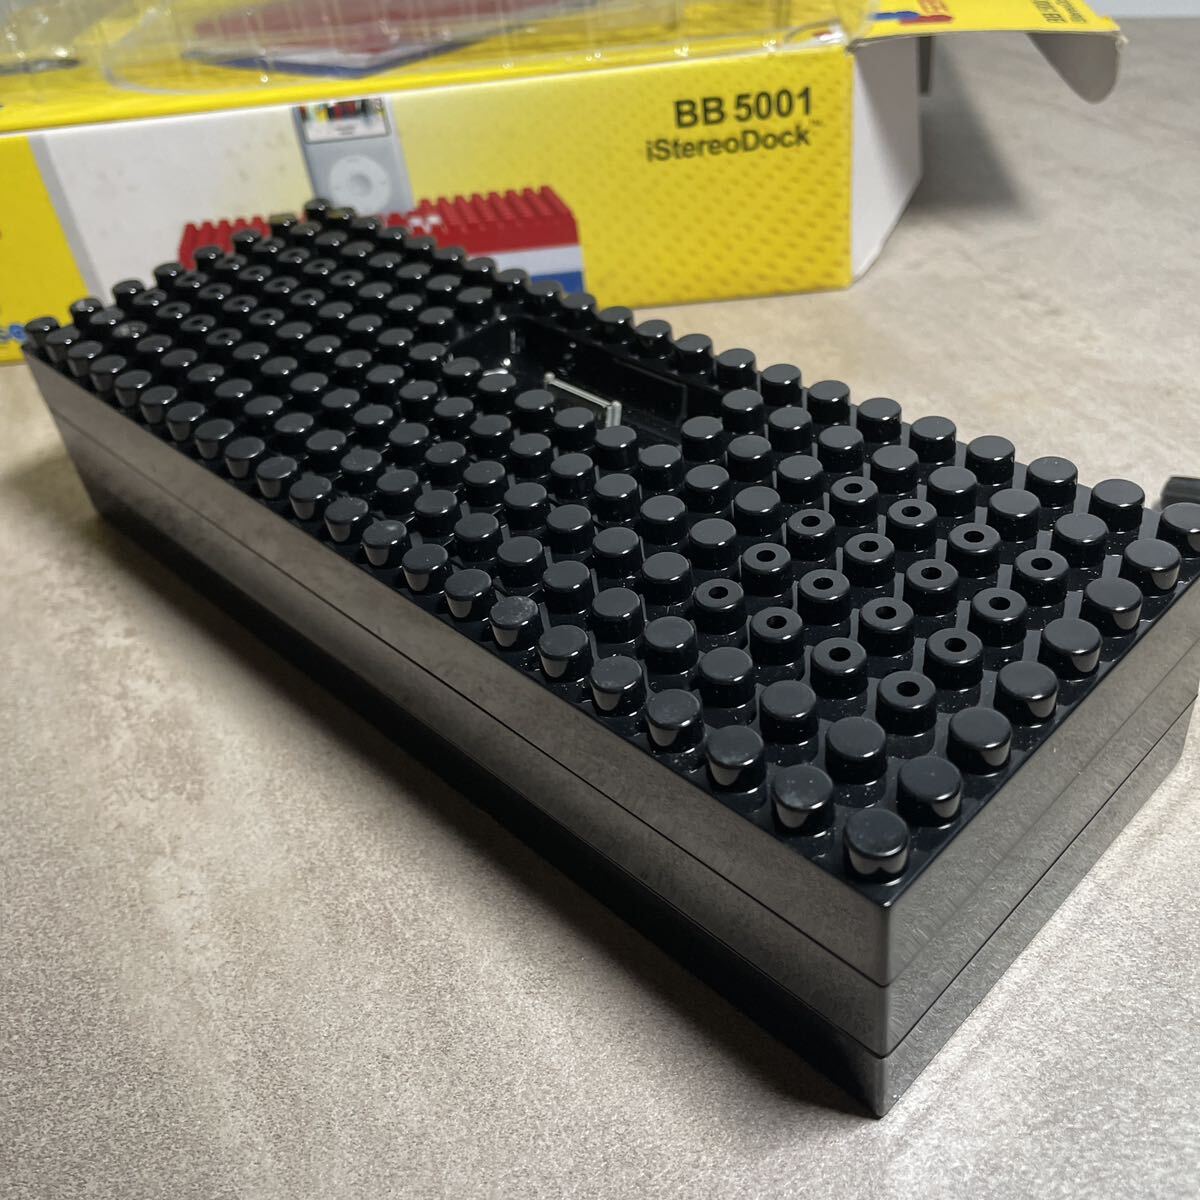 hz89 新品 未使用品 LEGO レゴ レゴブロックipod スピーカー 6-99 BB 5001 大型ブロックスピーカー 便利 オシャレ 黒_画像7